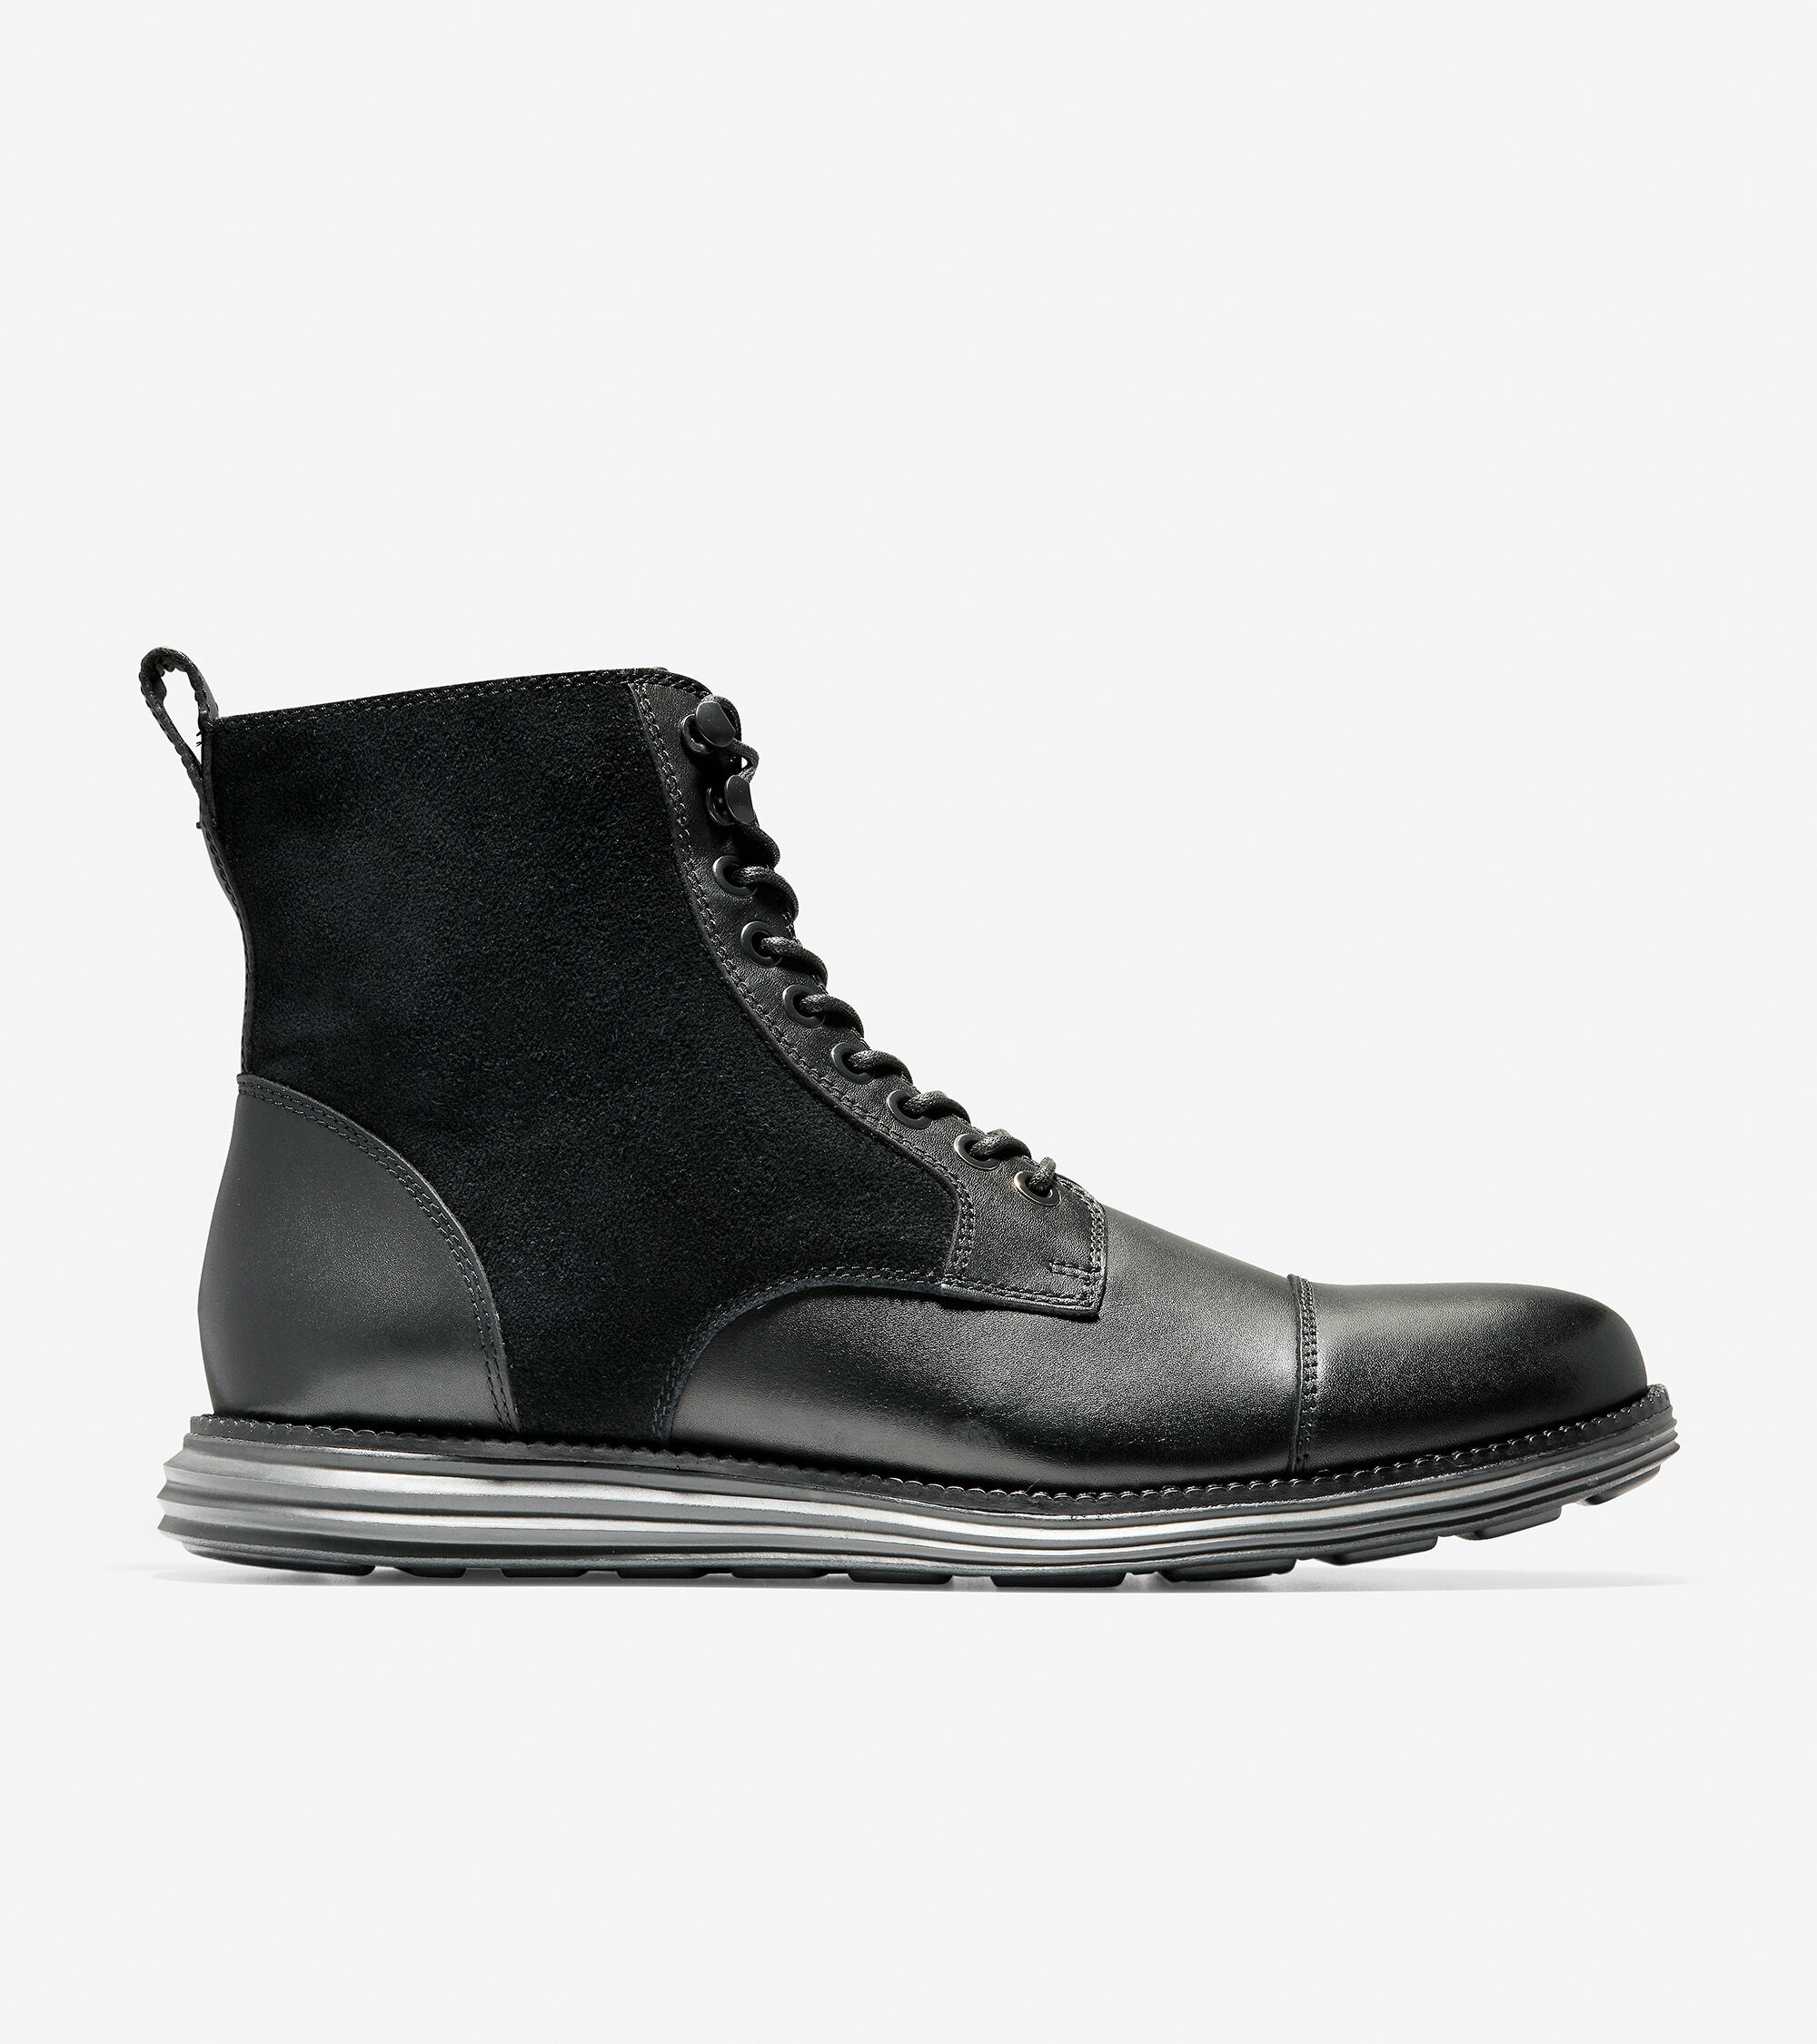 OriginalGrand Cap Toe Boots in Black 